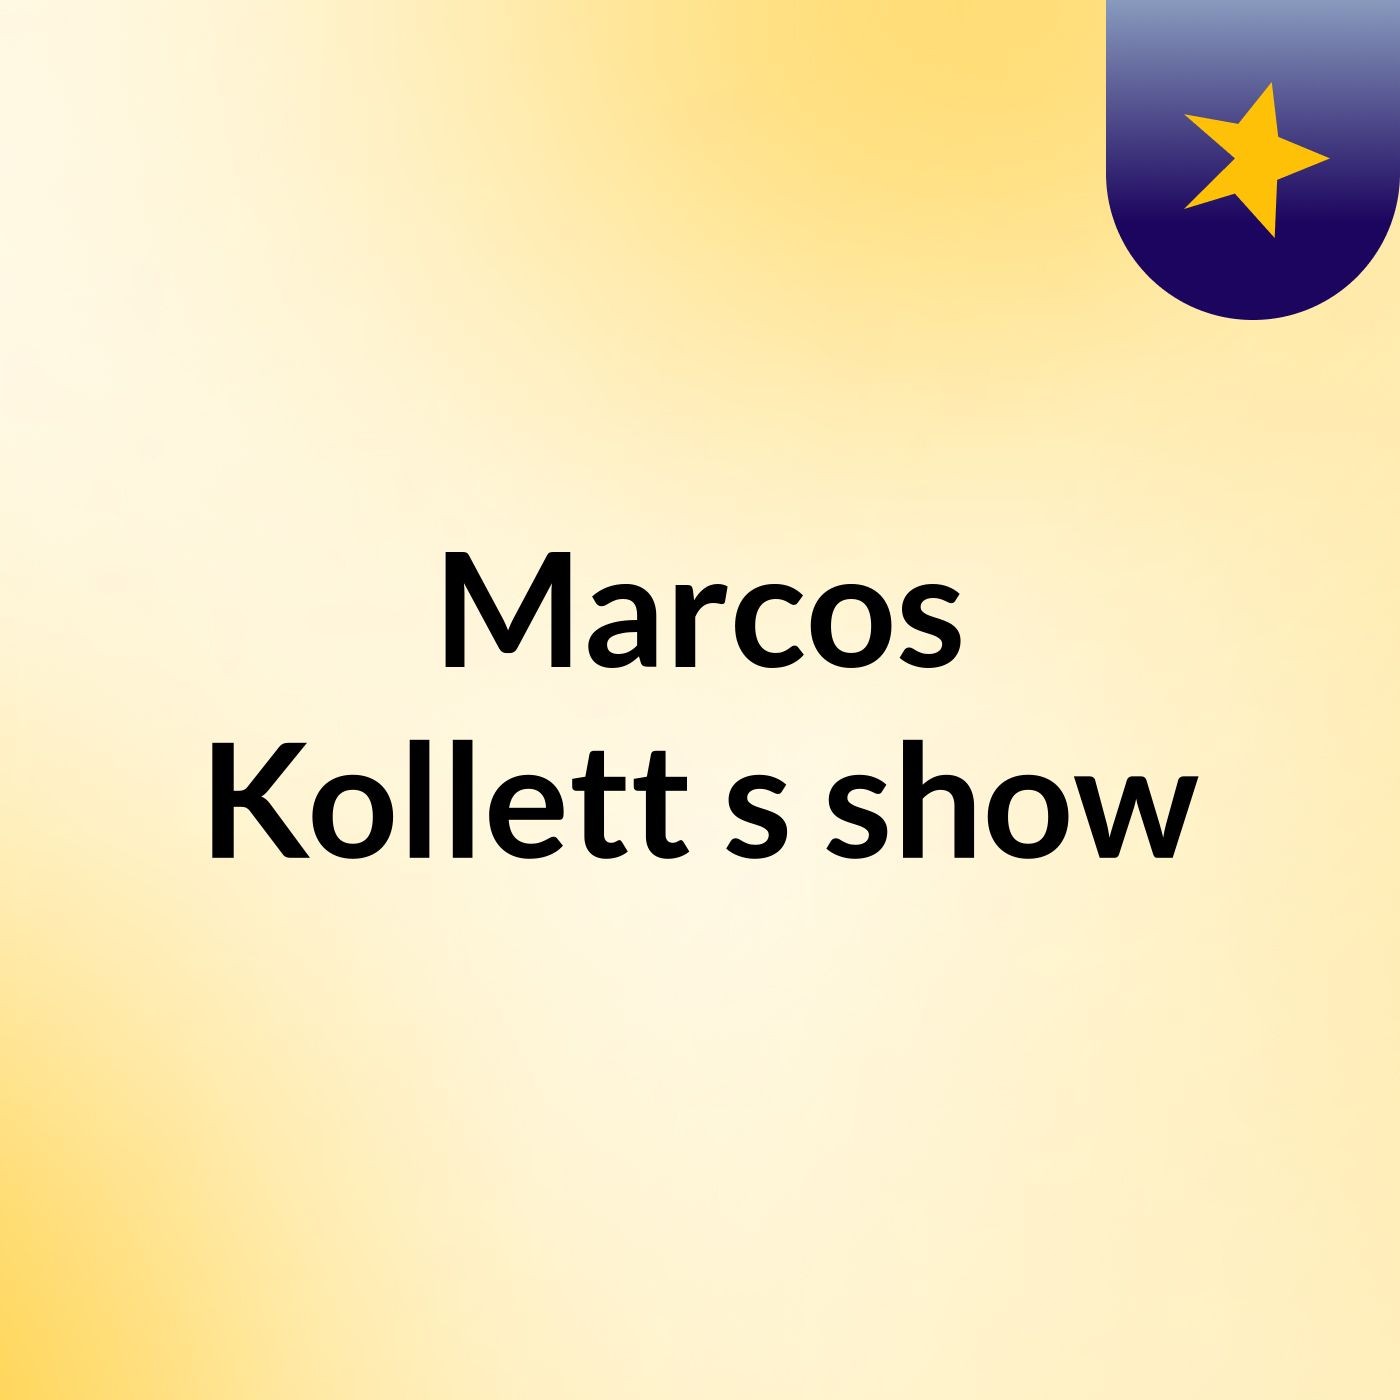 Marcos Kollett's show